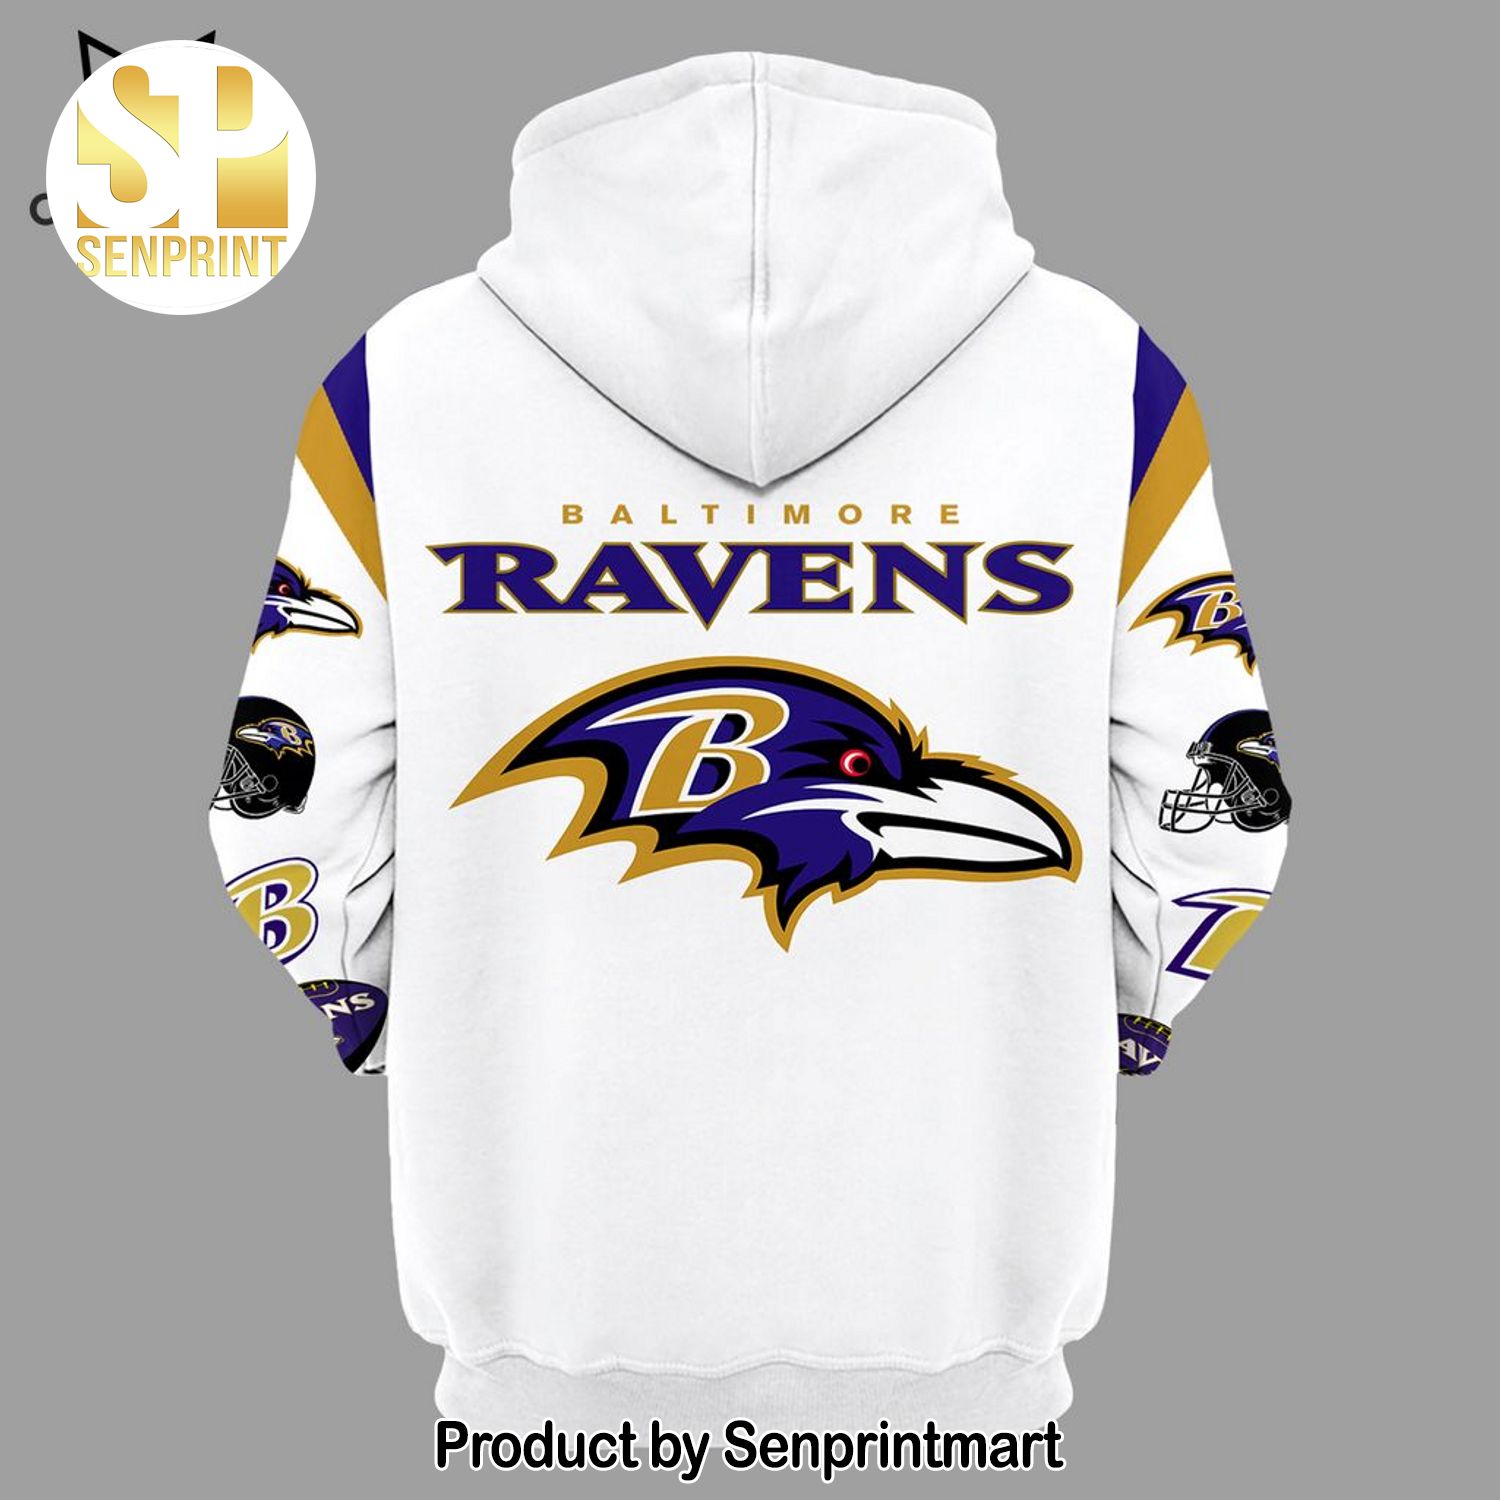 Baltimore Ravens 1996 Mascot Design White Full Print Shirt